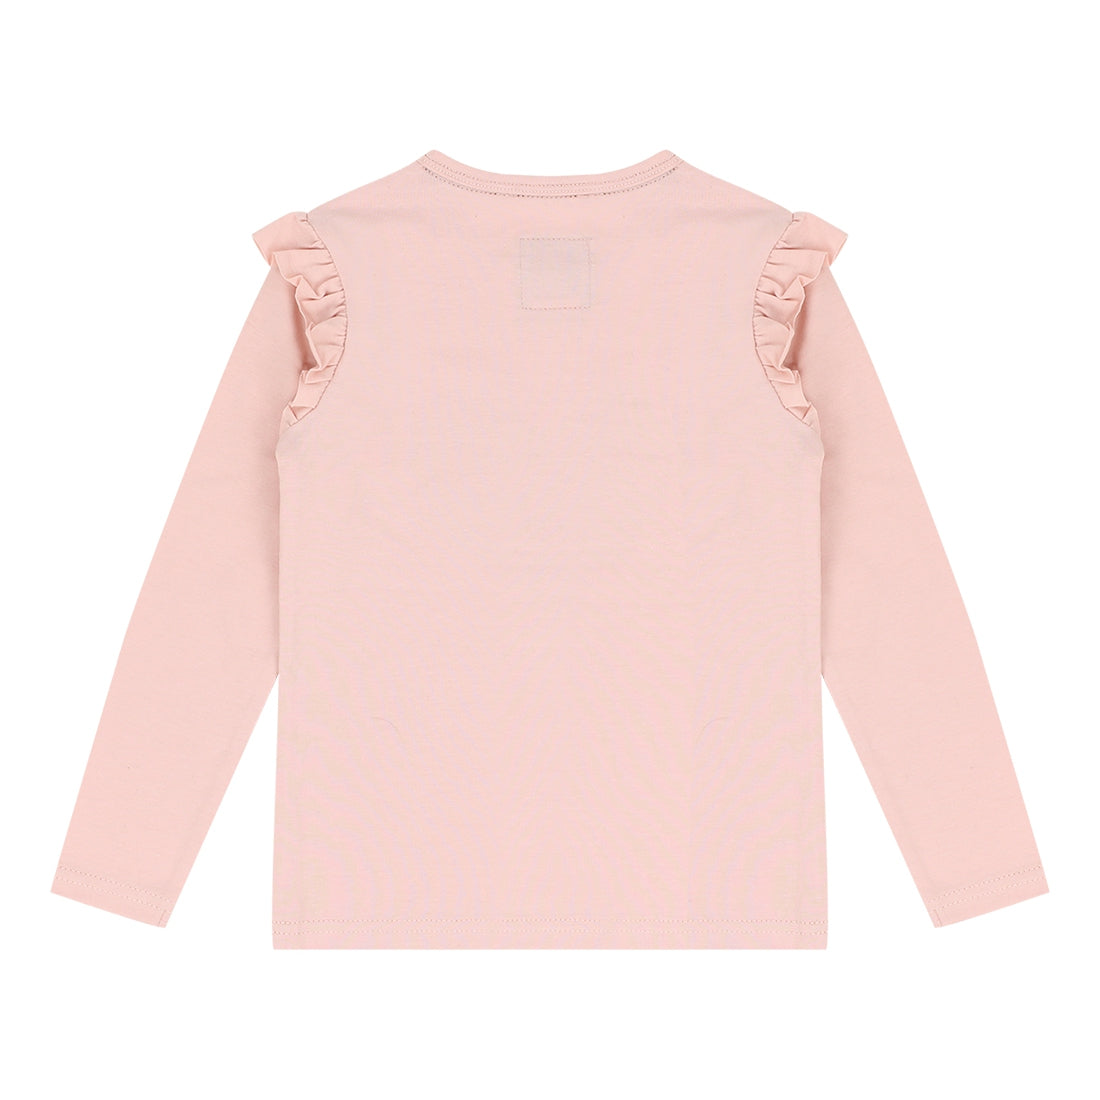 Meisjes T-shirt longsleeve van Koko Noko in de kleur Pink in maat 128.